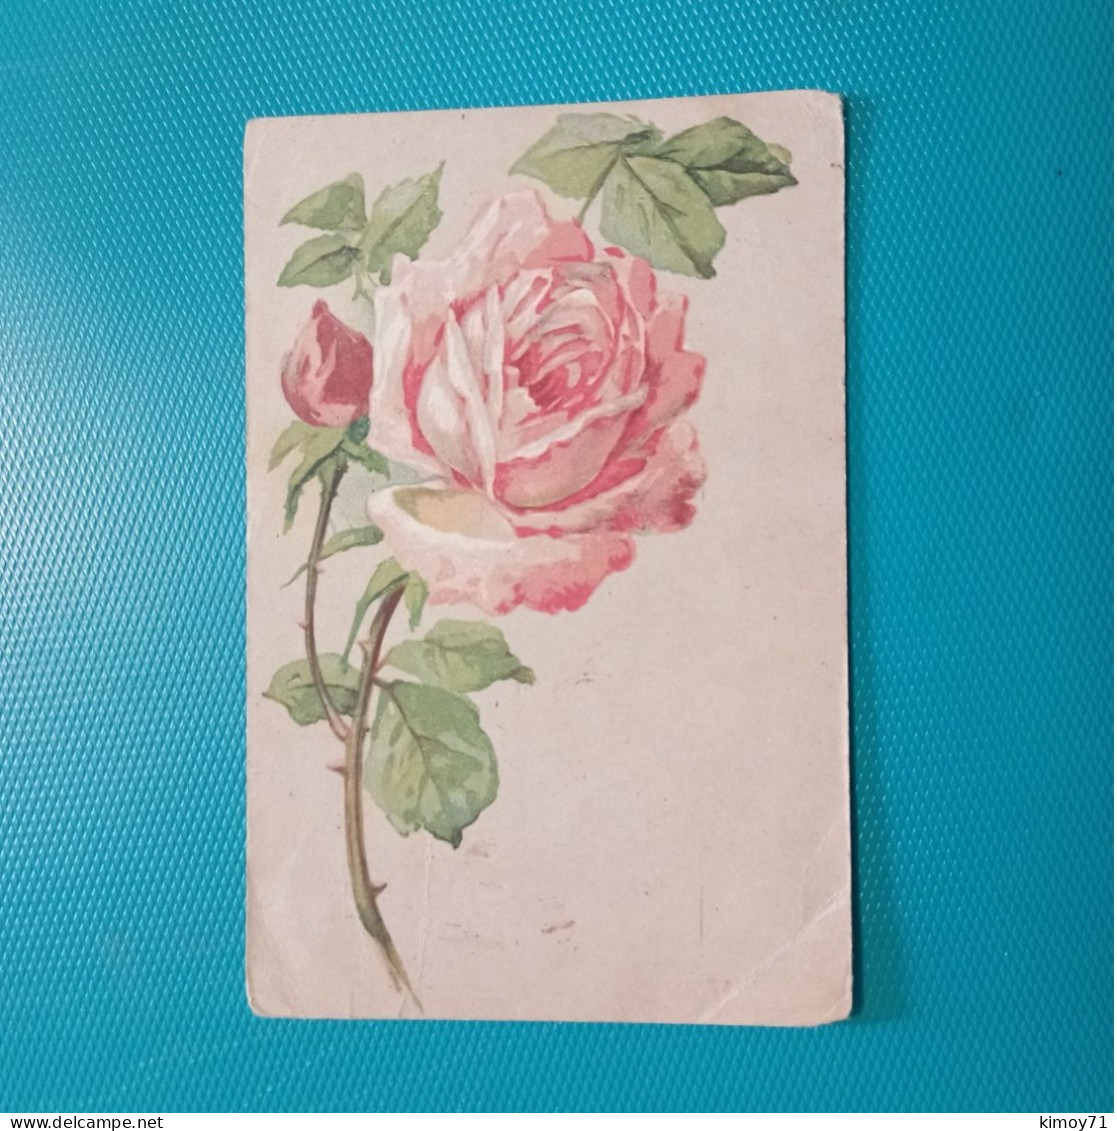 Cartolina Rosa. Viaggiata 1920 - Flowers